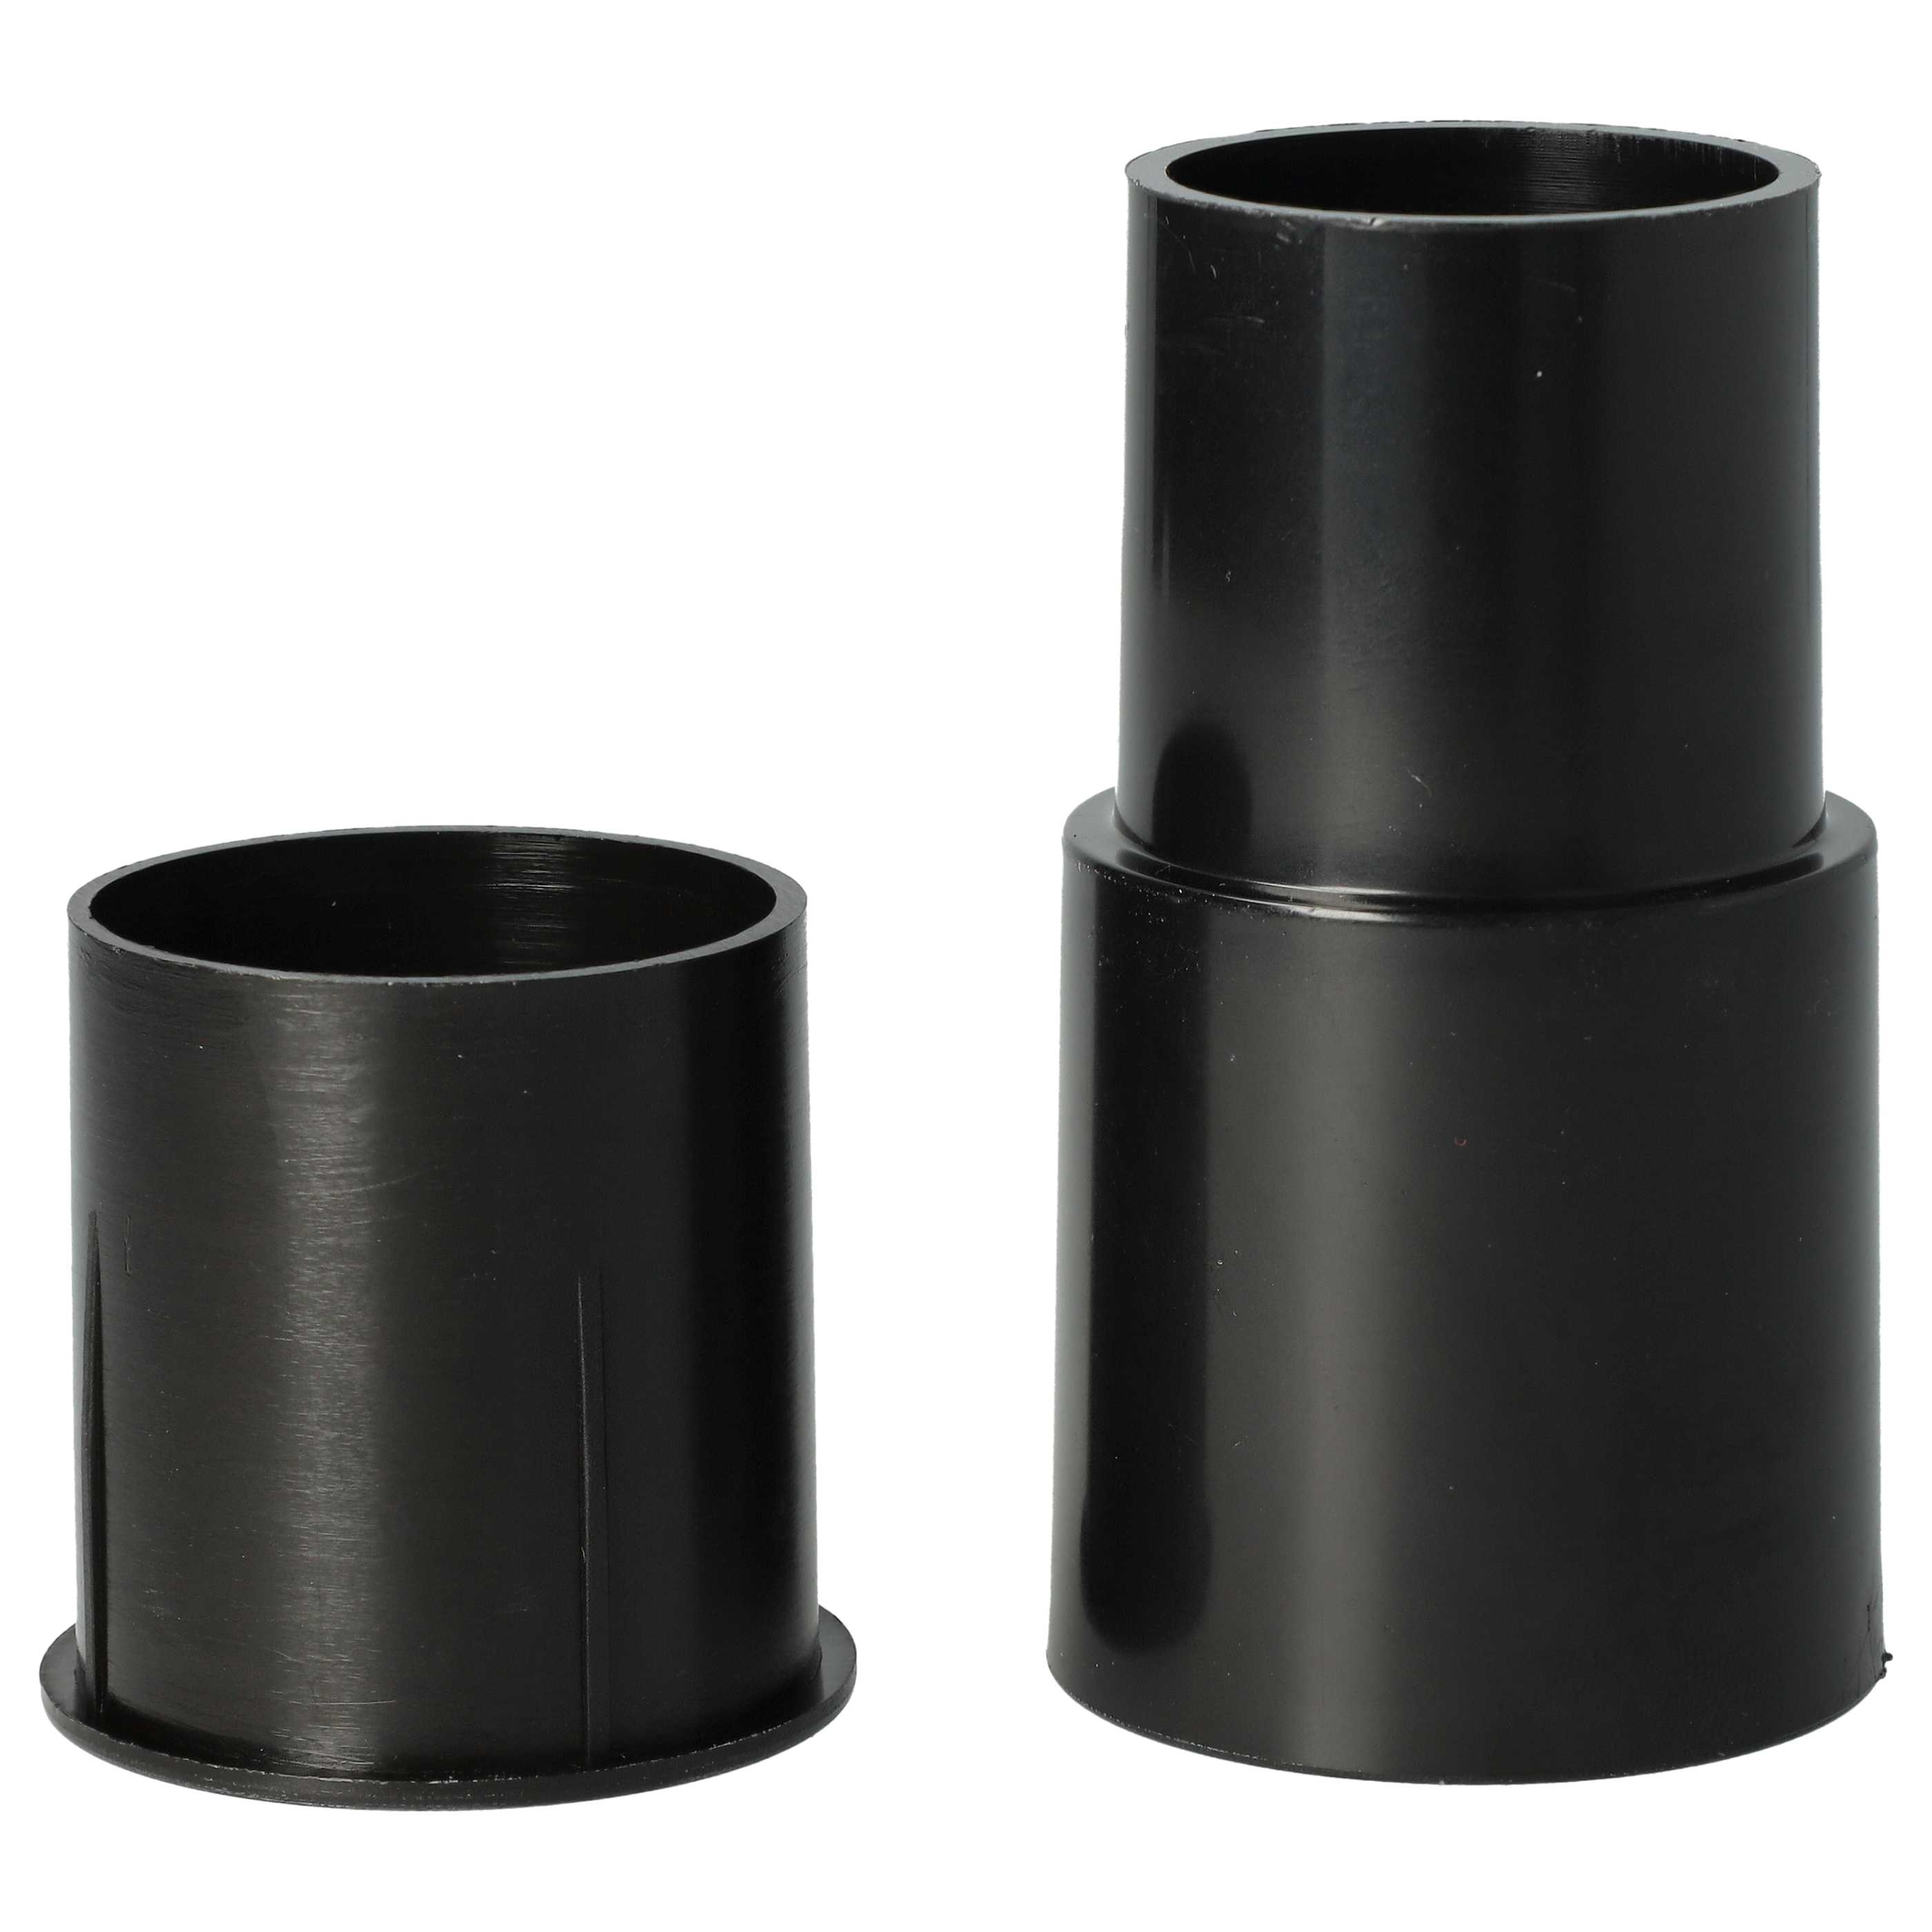 2x Adaptador para diversas aspiradoras como AEG, Philips, etc. - ⌀ 32 a 35 mm, negro